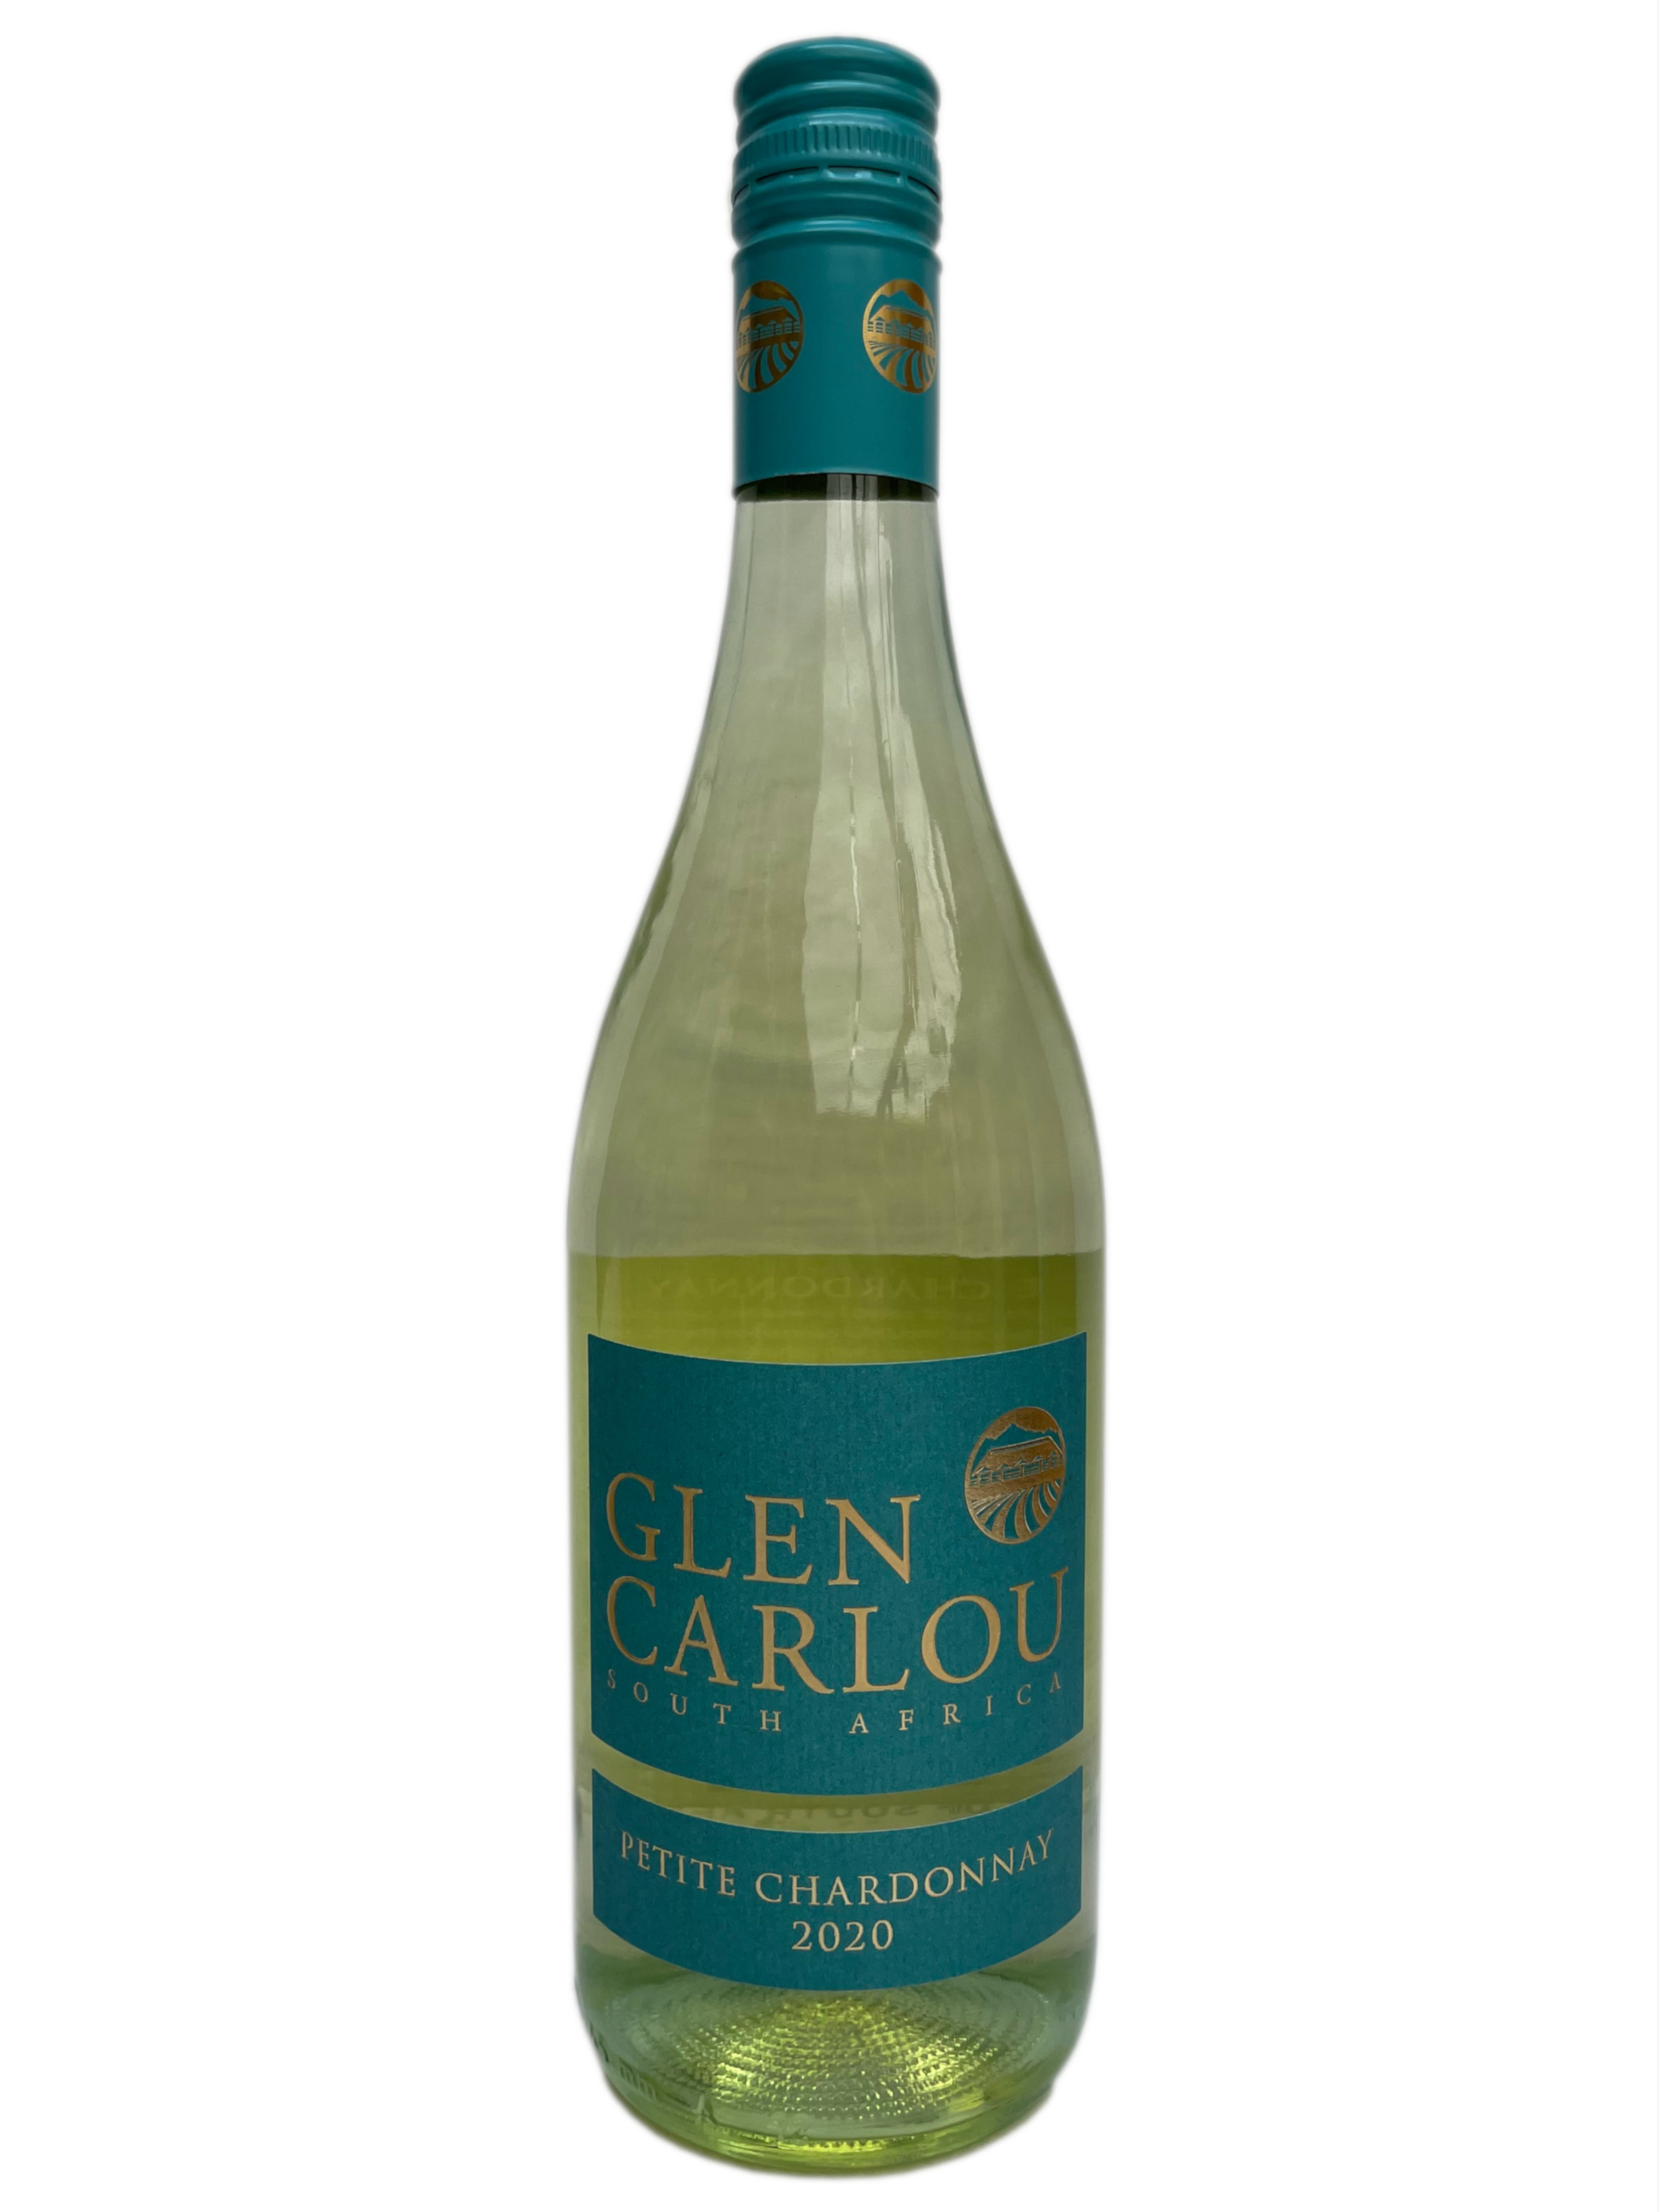 Glen Carlou Petite Chardonnay